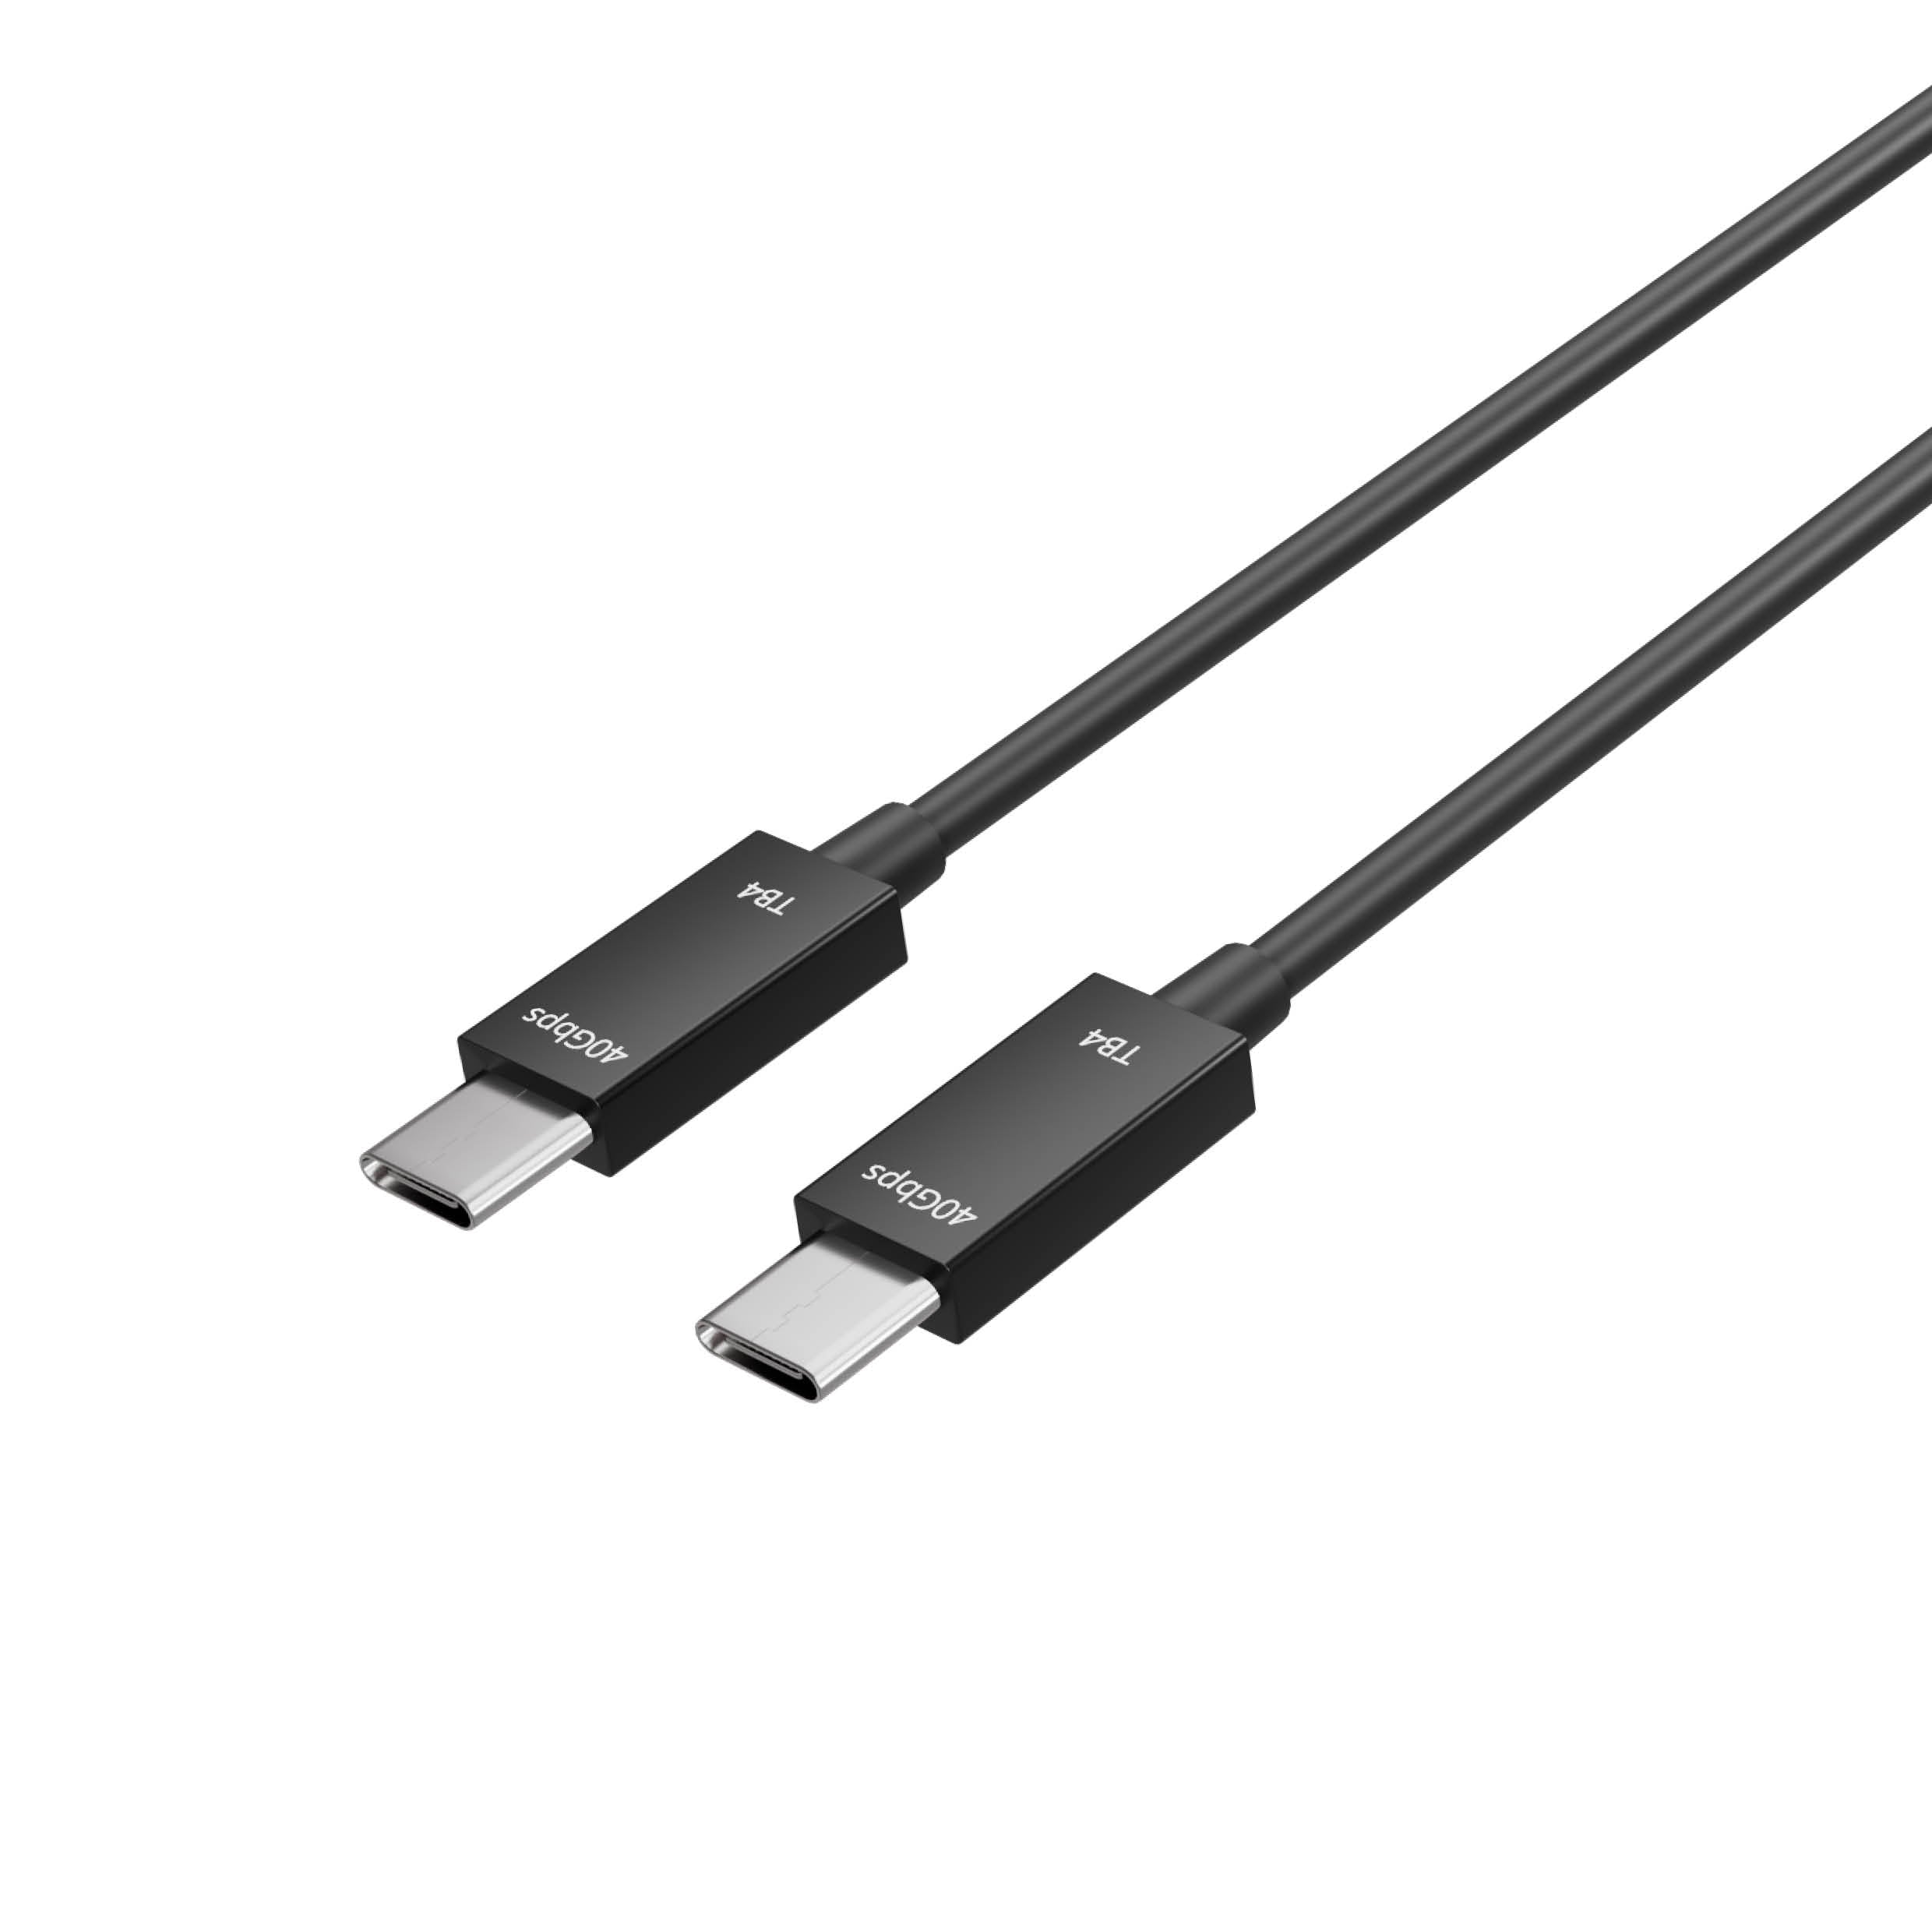 Flexline® -USB-C Verbindungskabel, Typ-C Stecker auf Typ-C Stecker, TB4